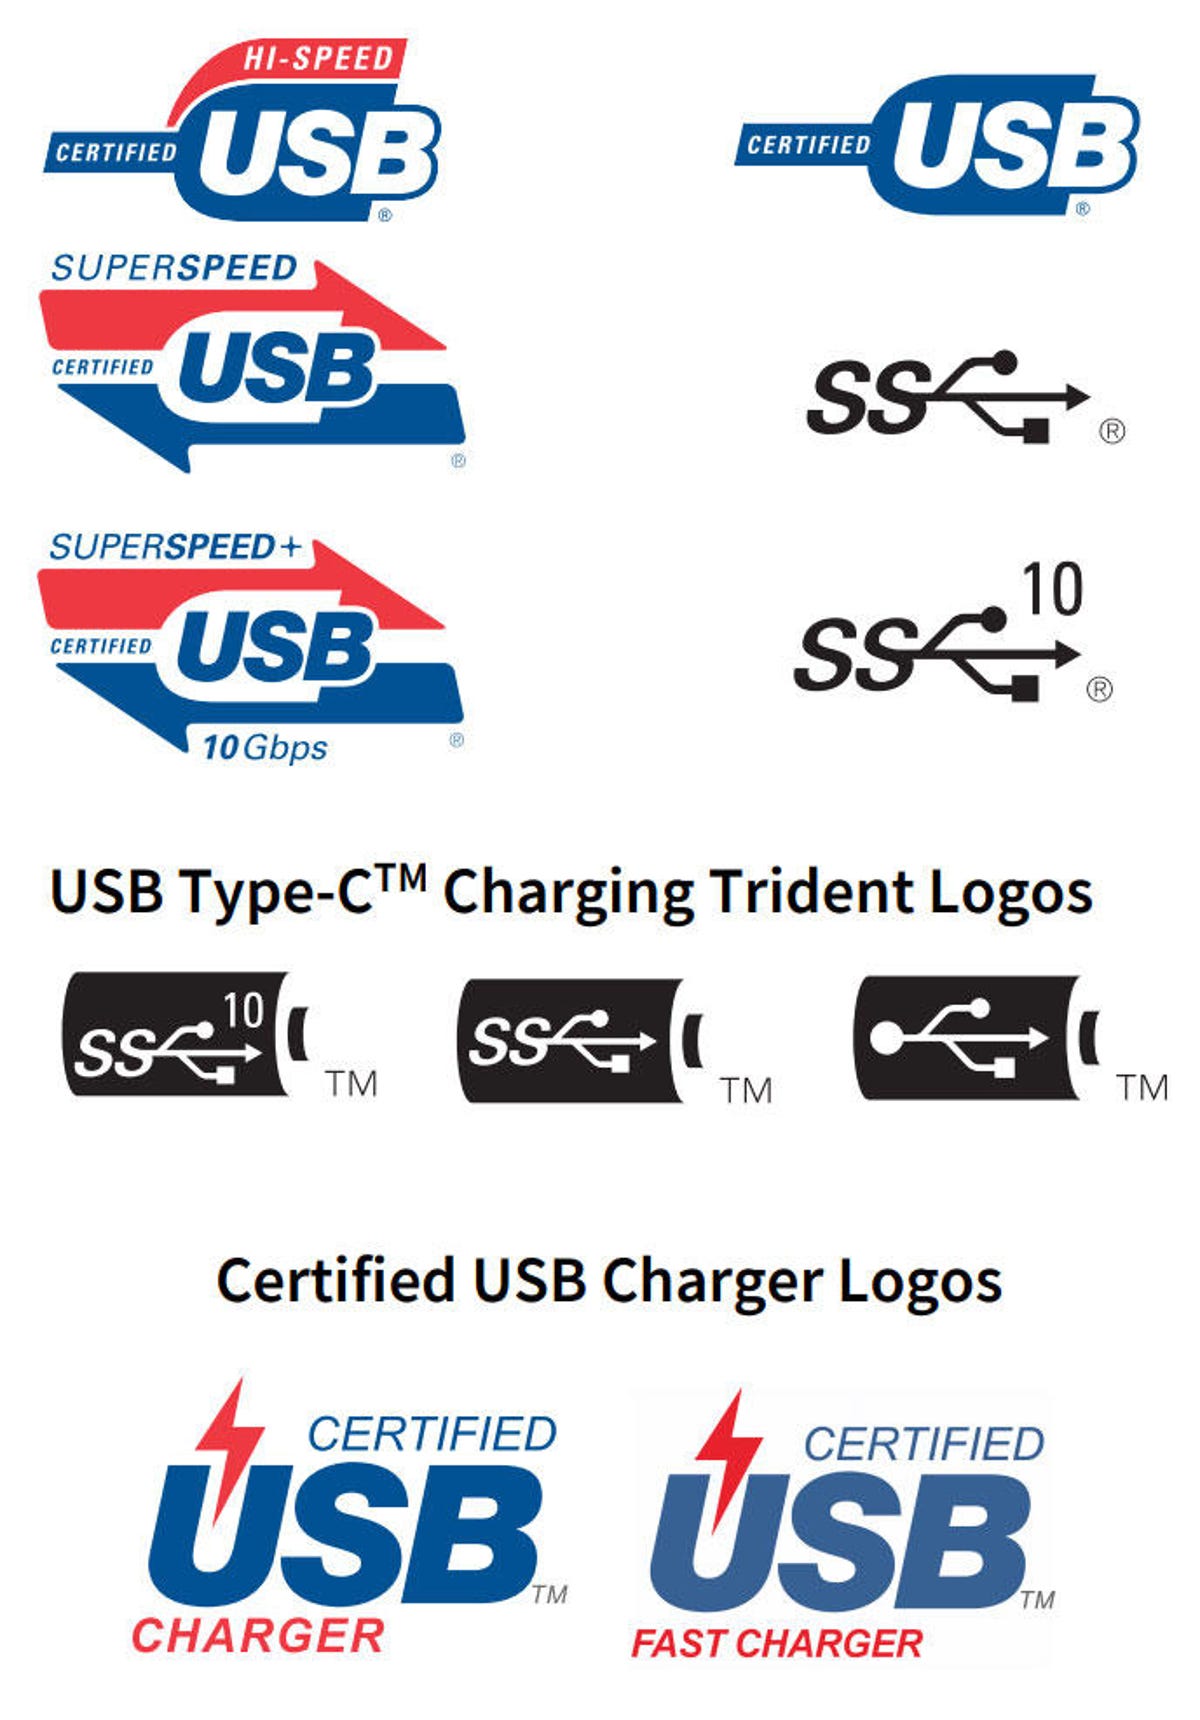 Præstation lineær helt bestemt Confused by USB names? Get used to it as USB 3.1 becomes 3.2 - CNET